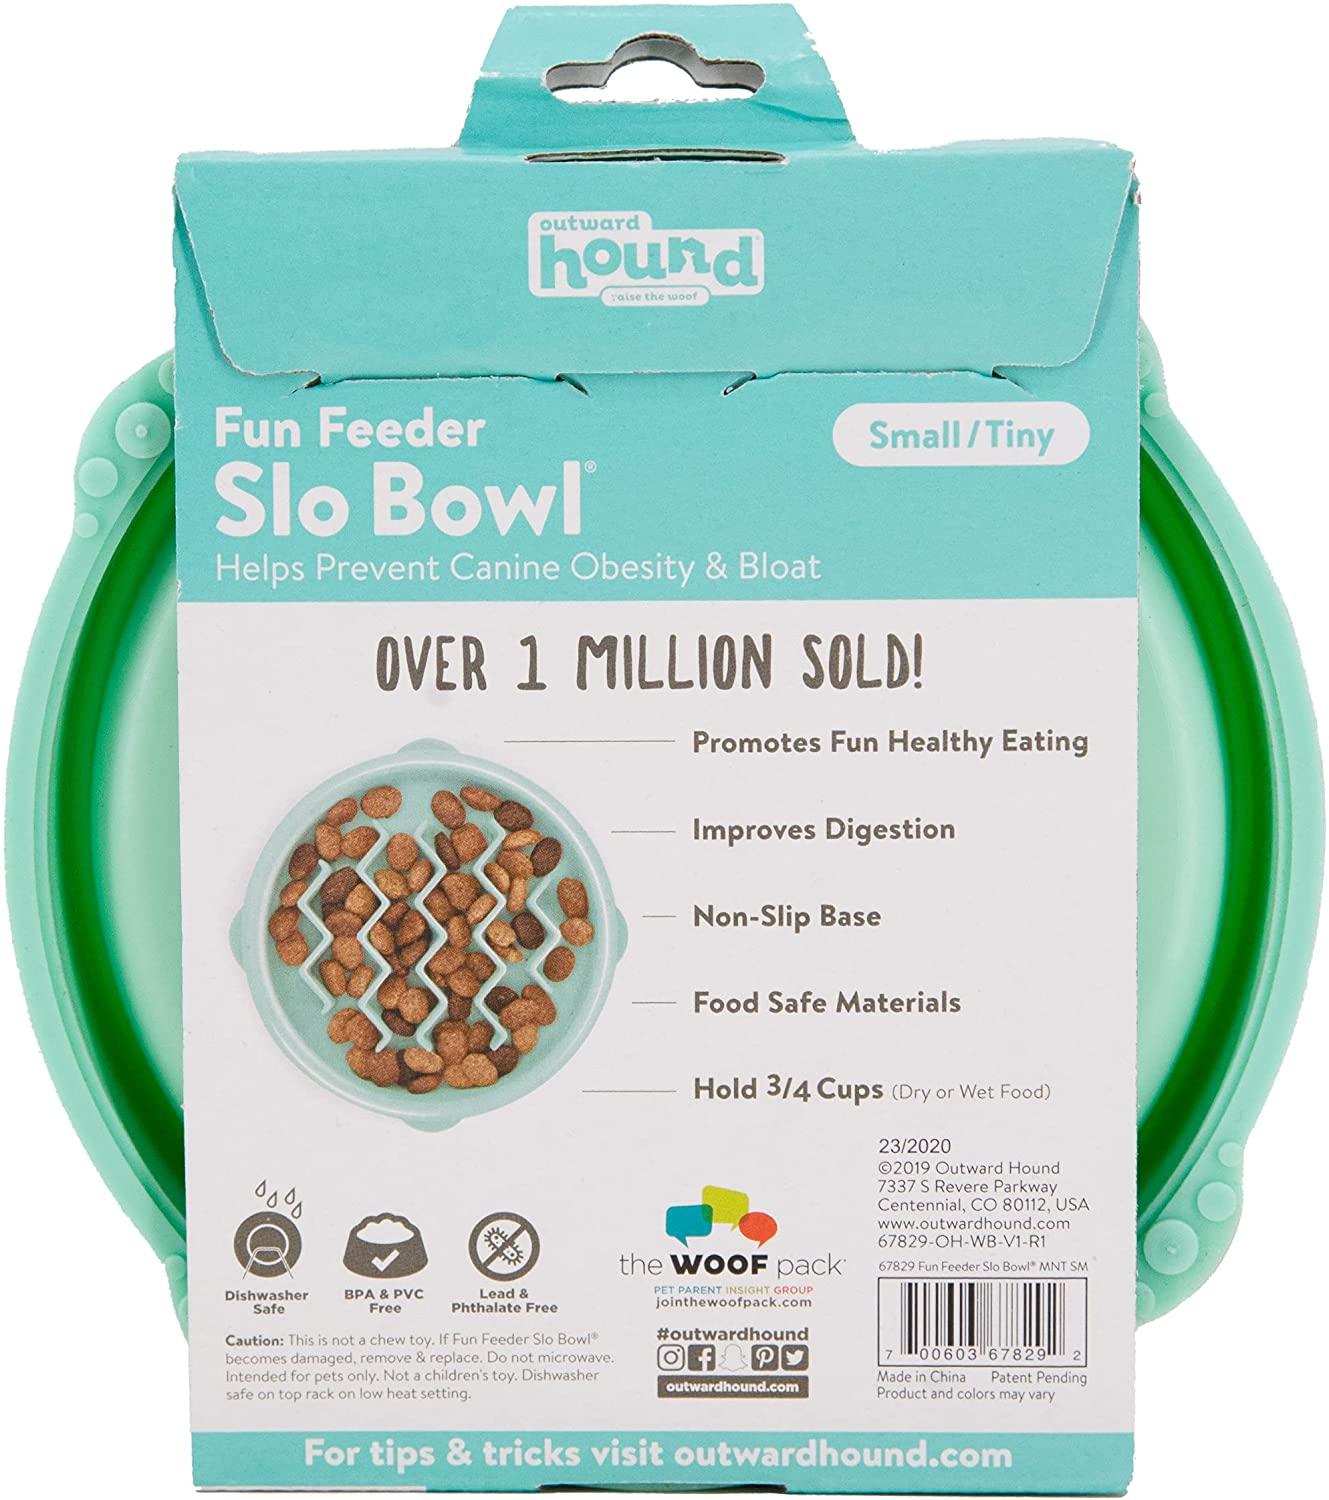 Outward Hound Fun Feeder Slo Bowl - Slow Feeder Dog Bowl